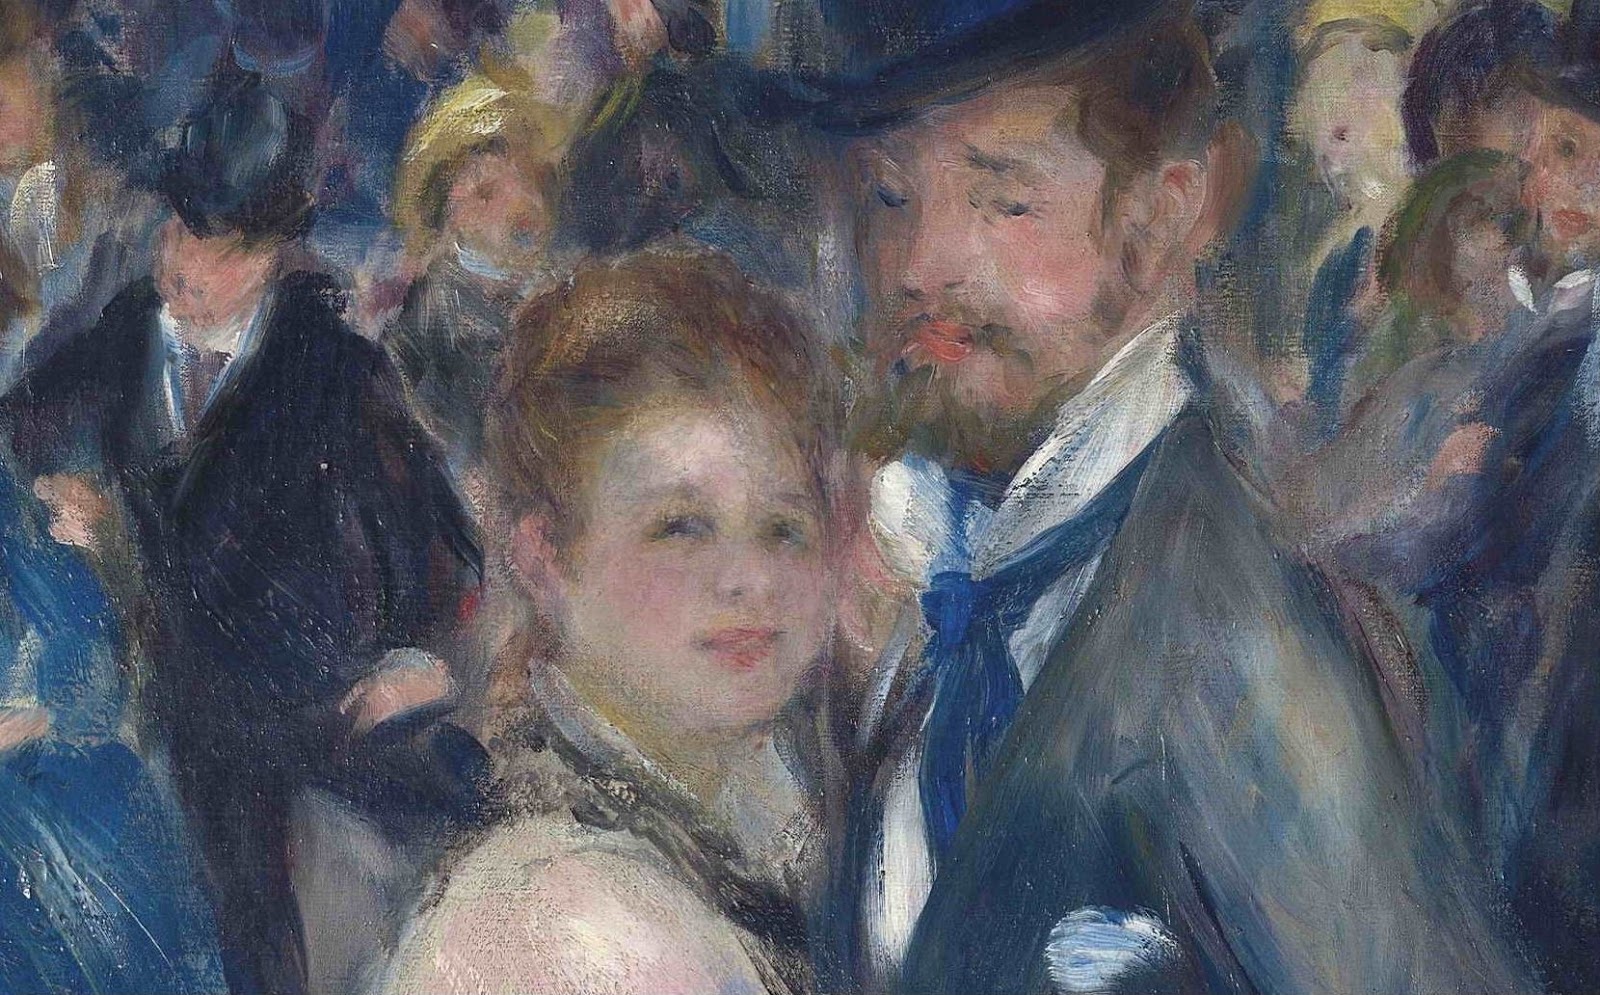 Pierre+Auguste+Renoir-1841-1-19 (435).JPG